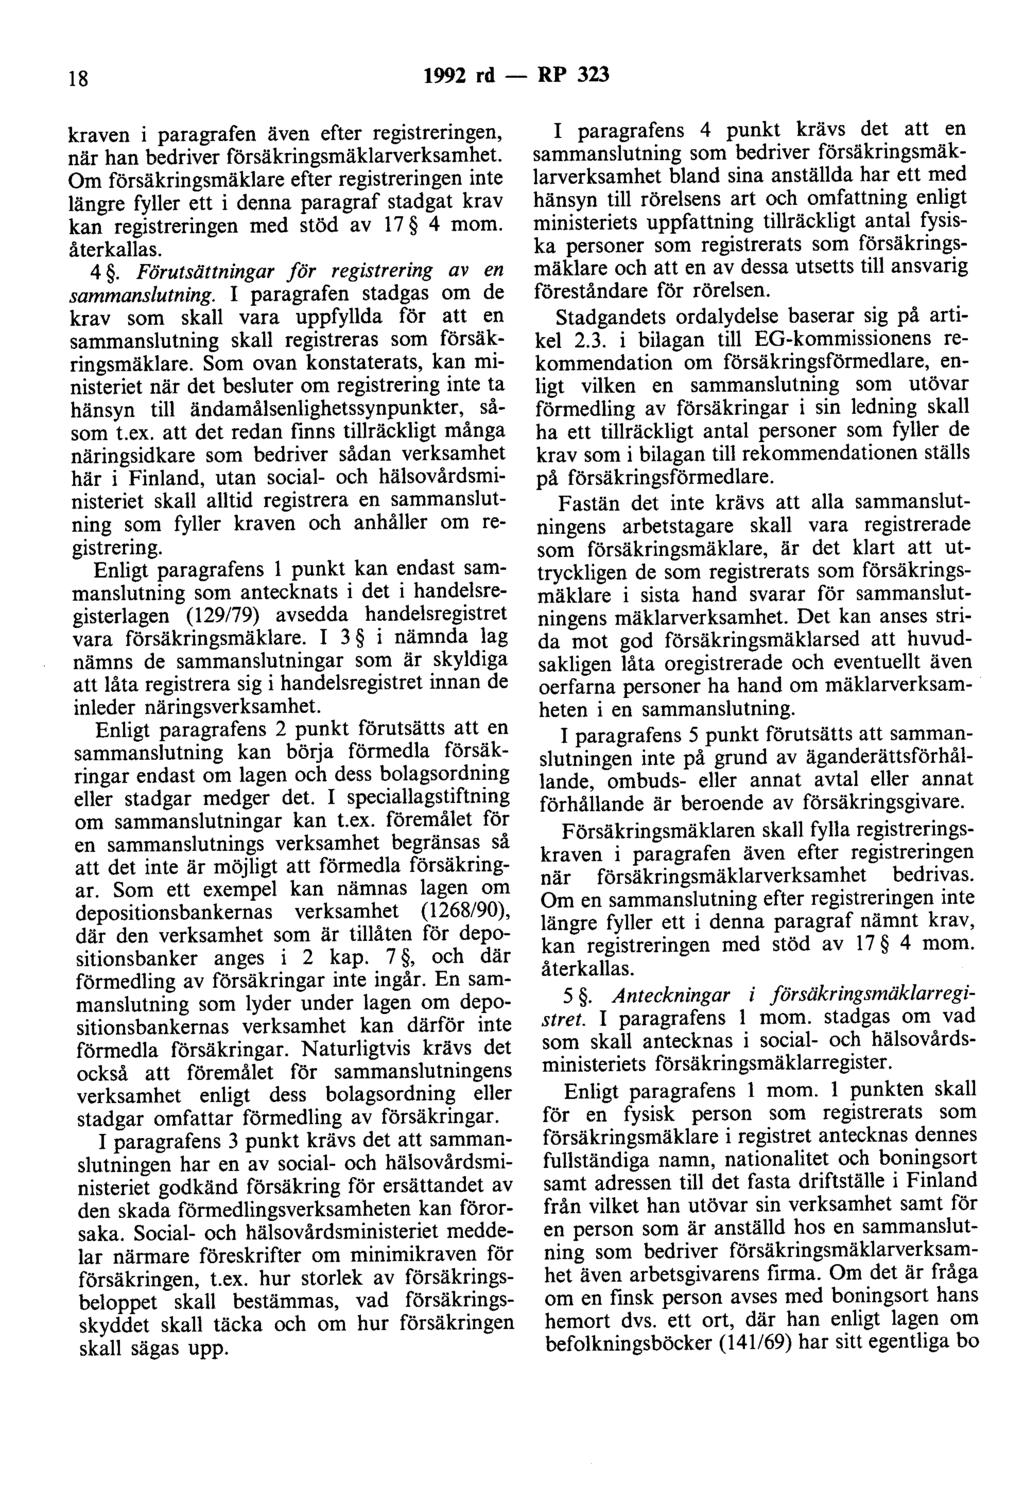 18 1992 rd - RP 323 kraven i paragrafen även efter registreringen, när han bedriver försäkringsmäklarverksamhet.